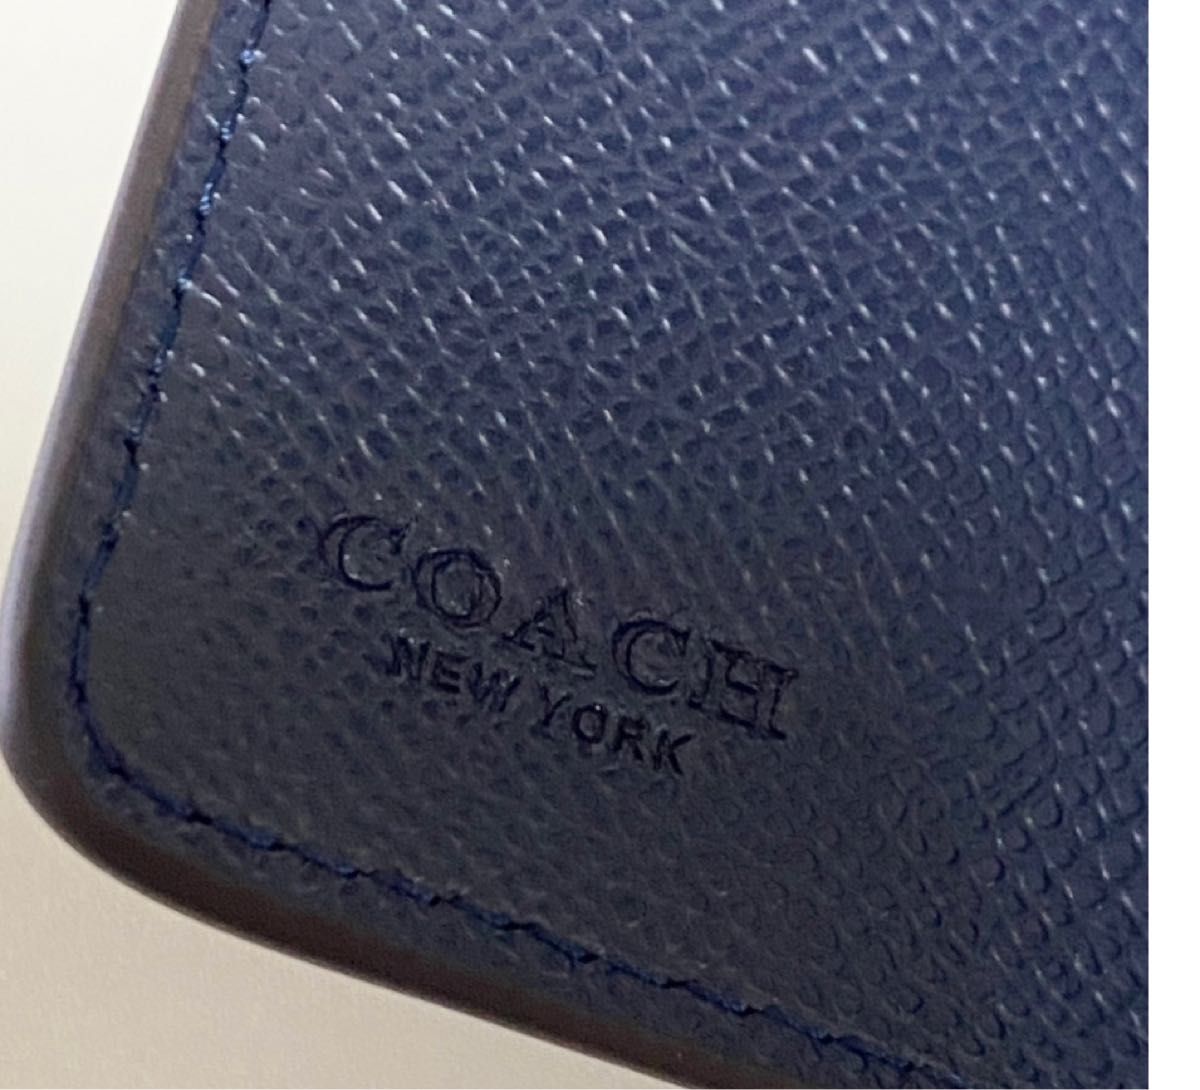 COACH 二つ折り財布 クロスグレーン レザー 6390 ミッドナイト